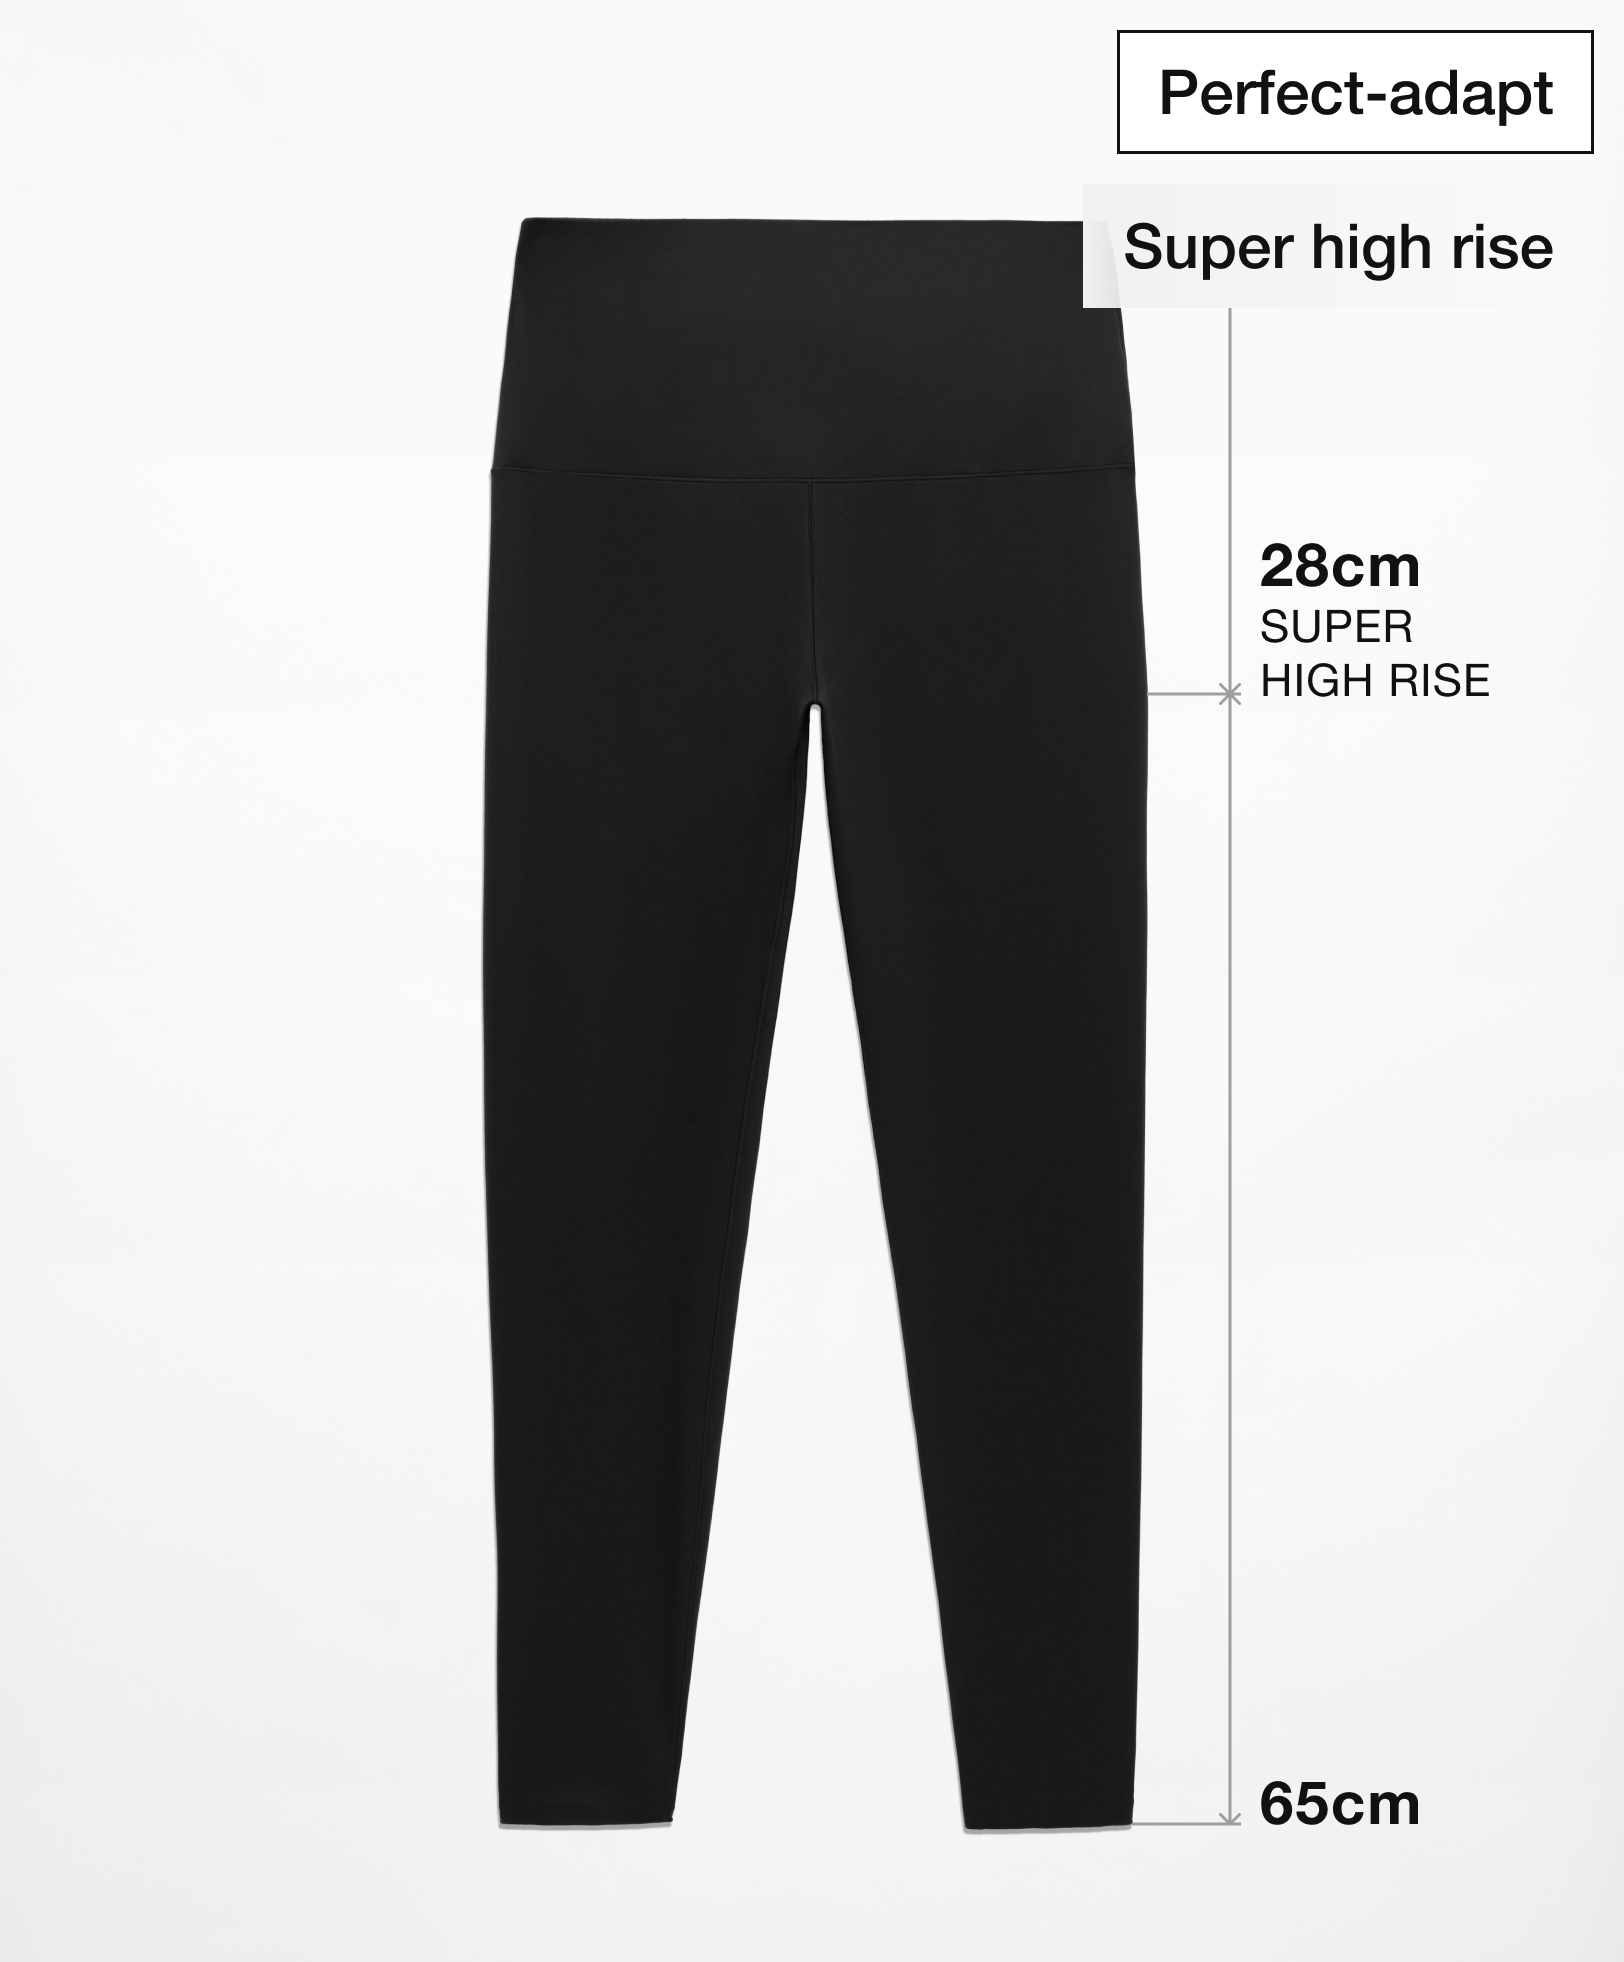 Leggings tobillero super high rise perfect adapt 65 cm